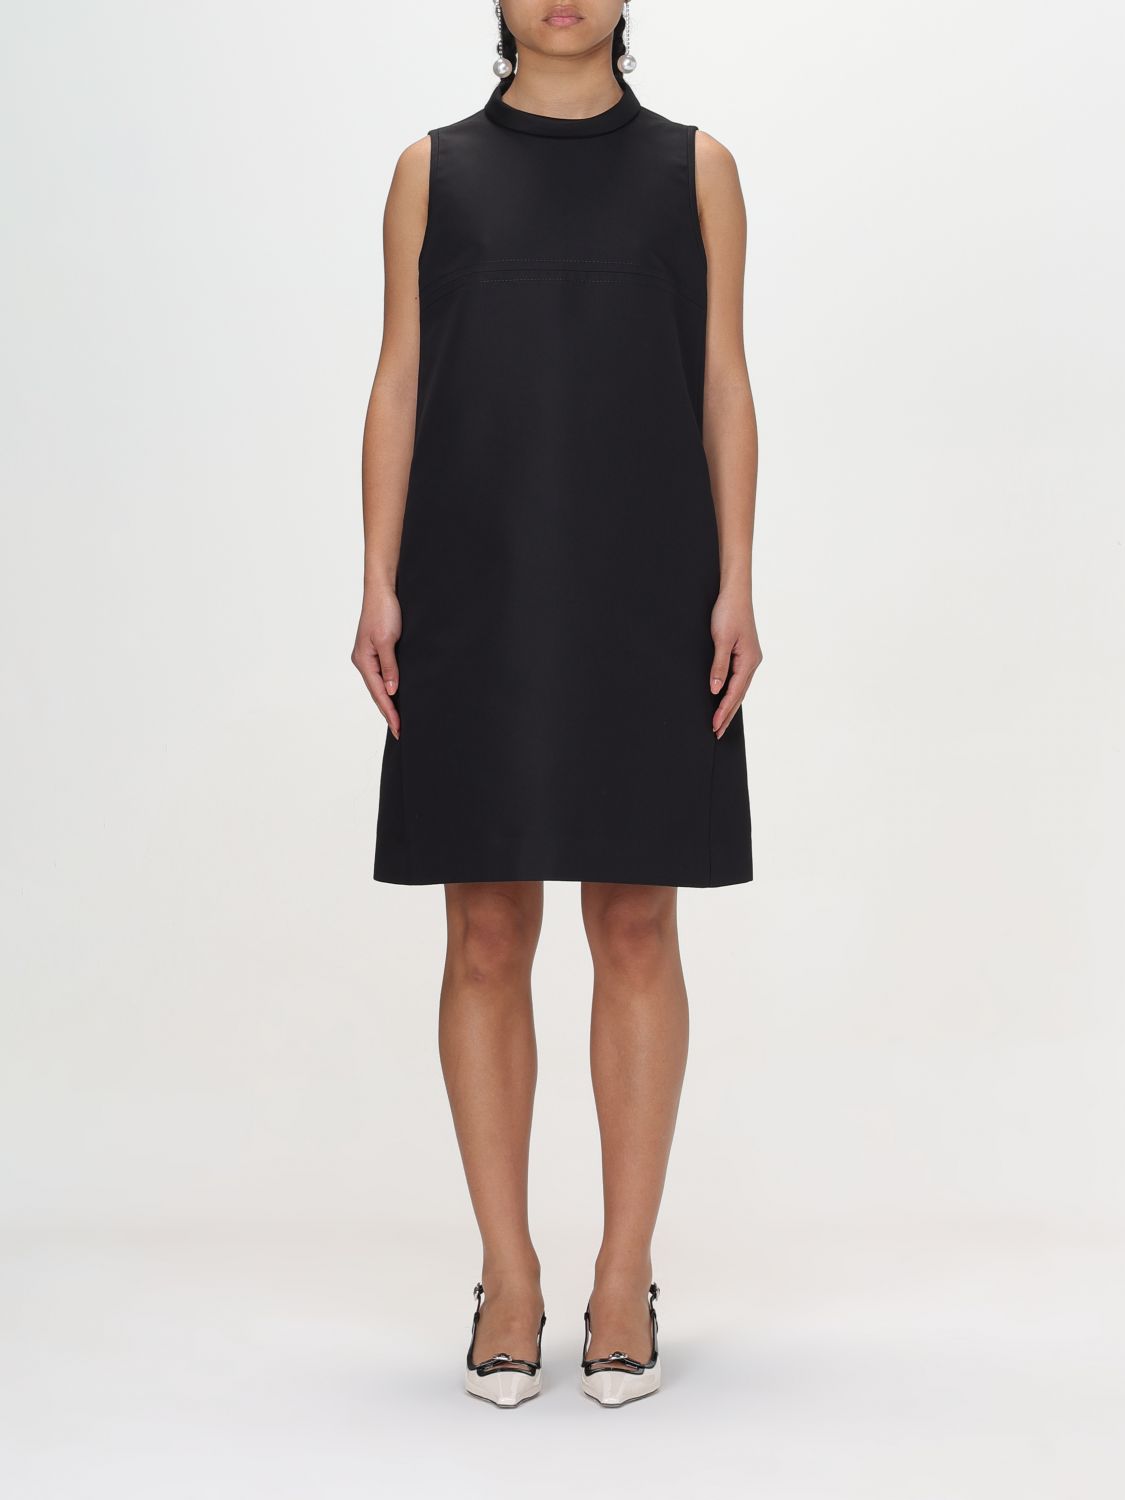 N° 21 Dress N° 21 Woman colour Black